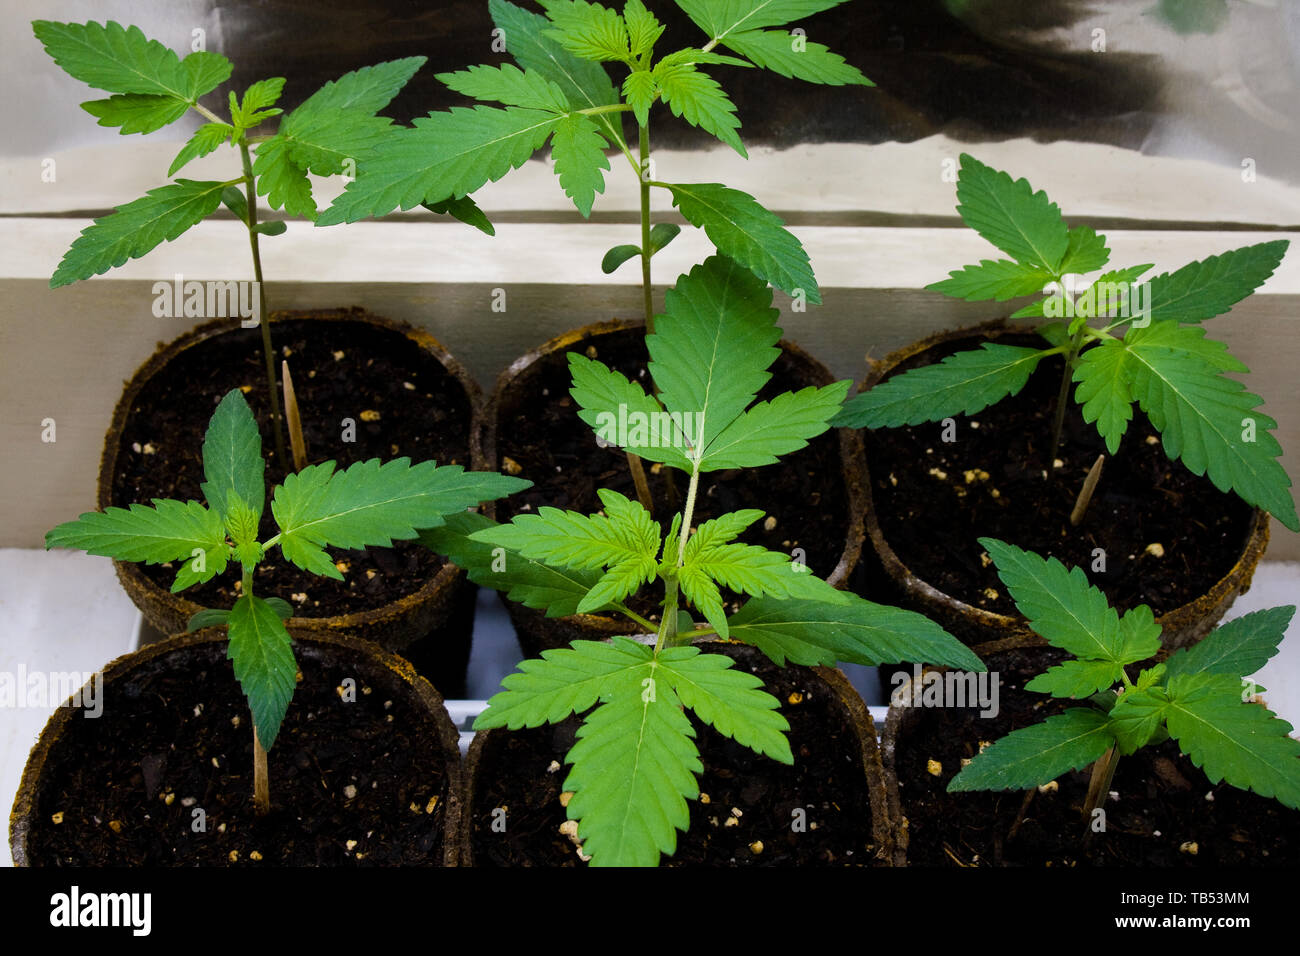 Las plantas jóvenes de Cannabis - también conocido como marihuana. Que contengan químicos psicoactivo THC, así como otros cannabinoides. Foto de stock